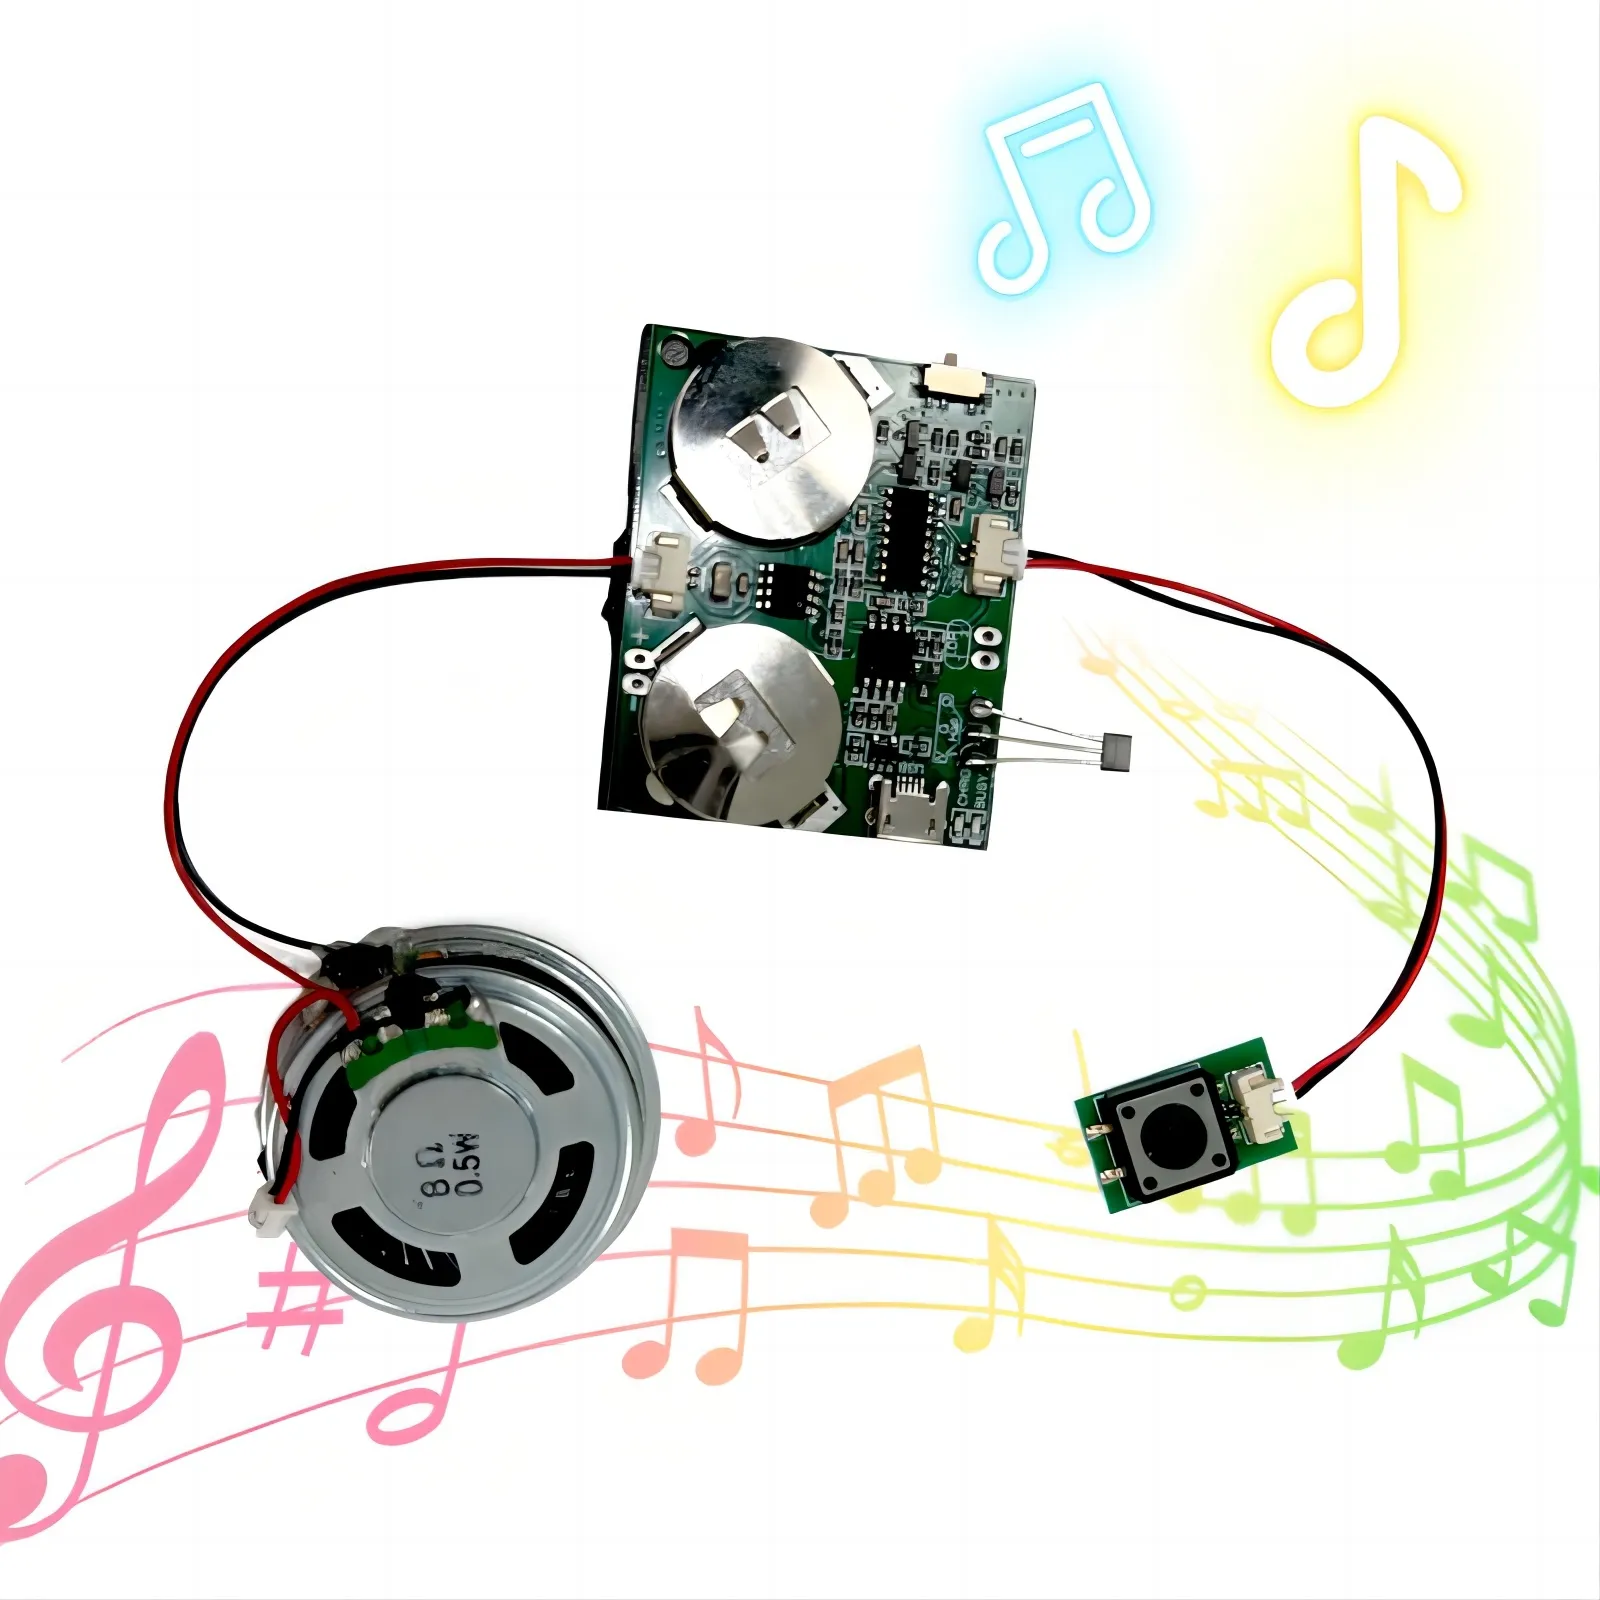 Wiederauf lad bares USB-Sound rekorder modul mit Druckknopf MP3-Audiowiedergabe Toy Voice Recorder-Lautsprecher